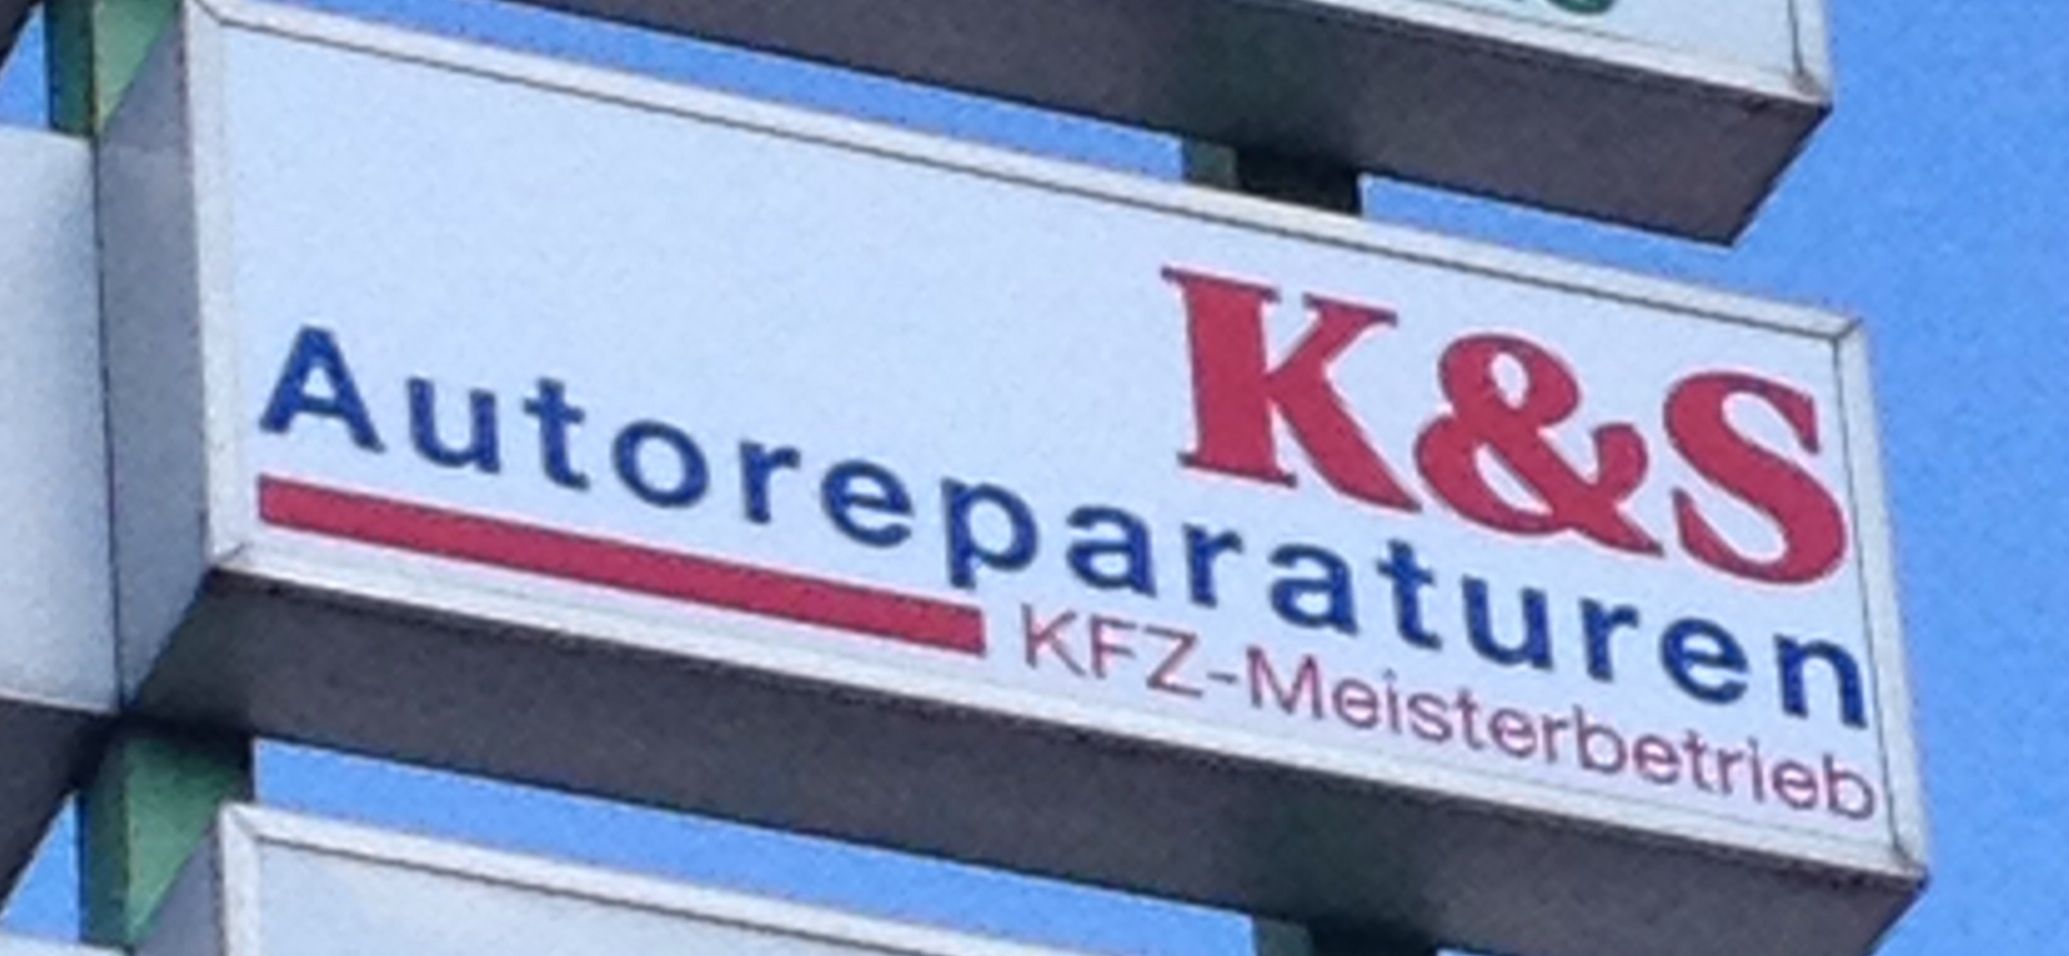 Logo Werkstatt